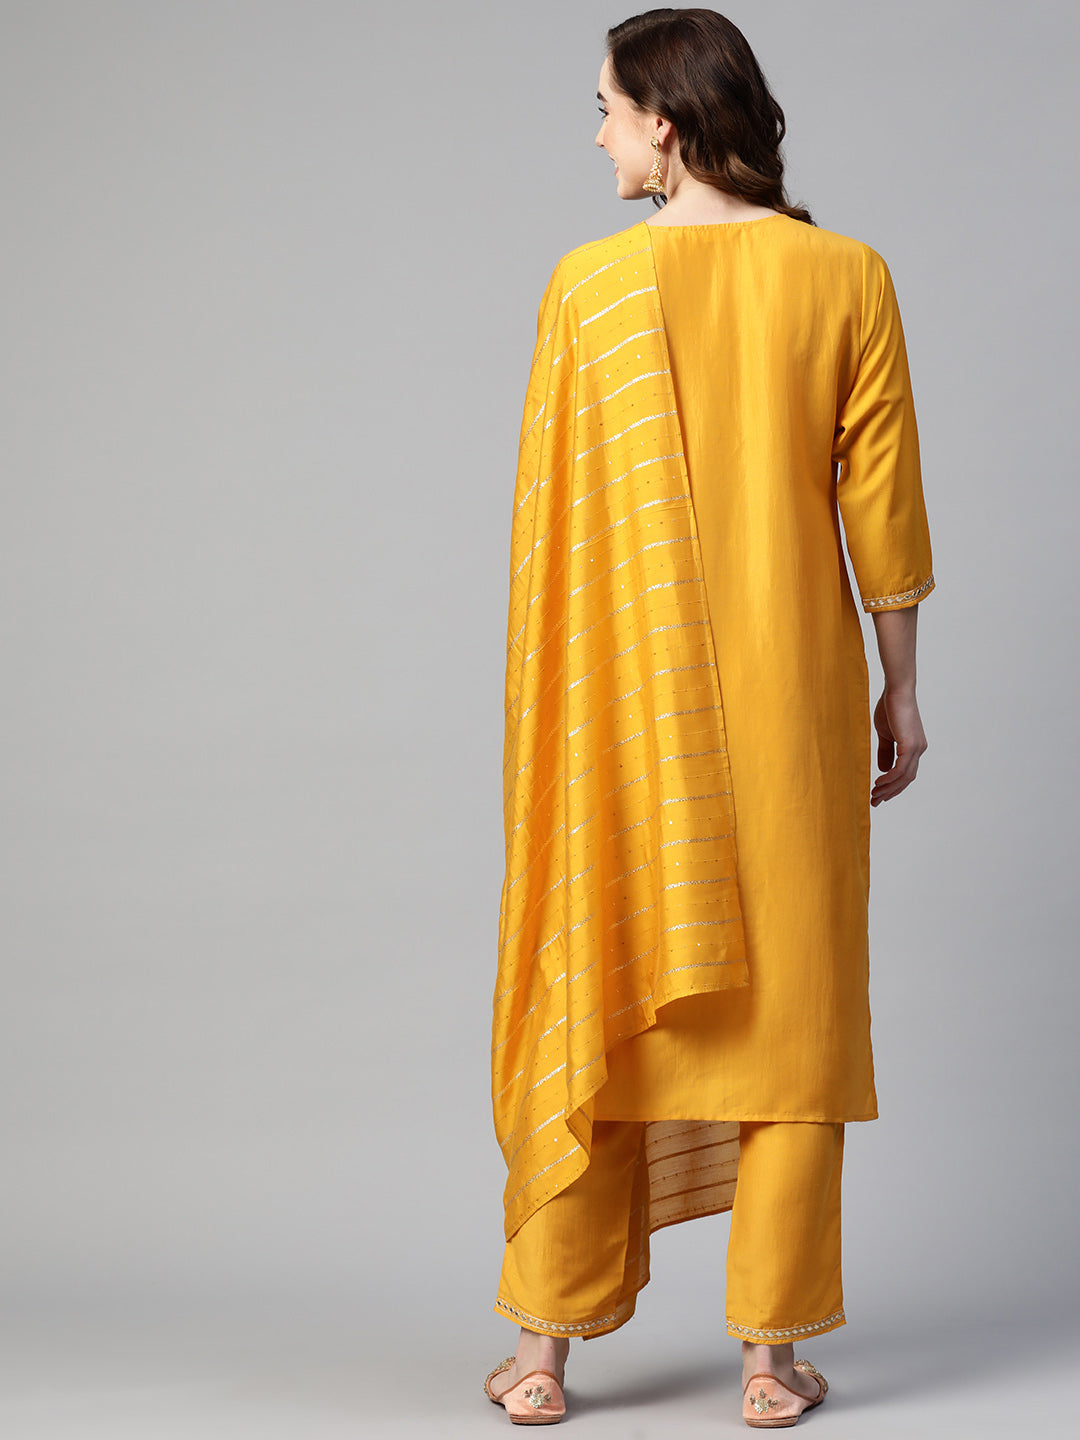 Sunehri Women's Silk Blend Mustard Embroidered A-Line Kurta Trouser Dupatta Set